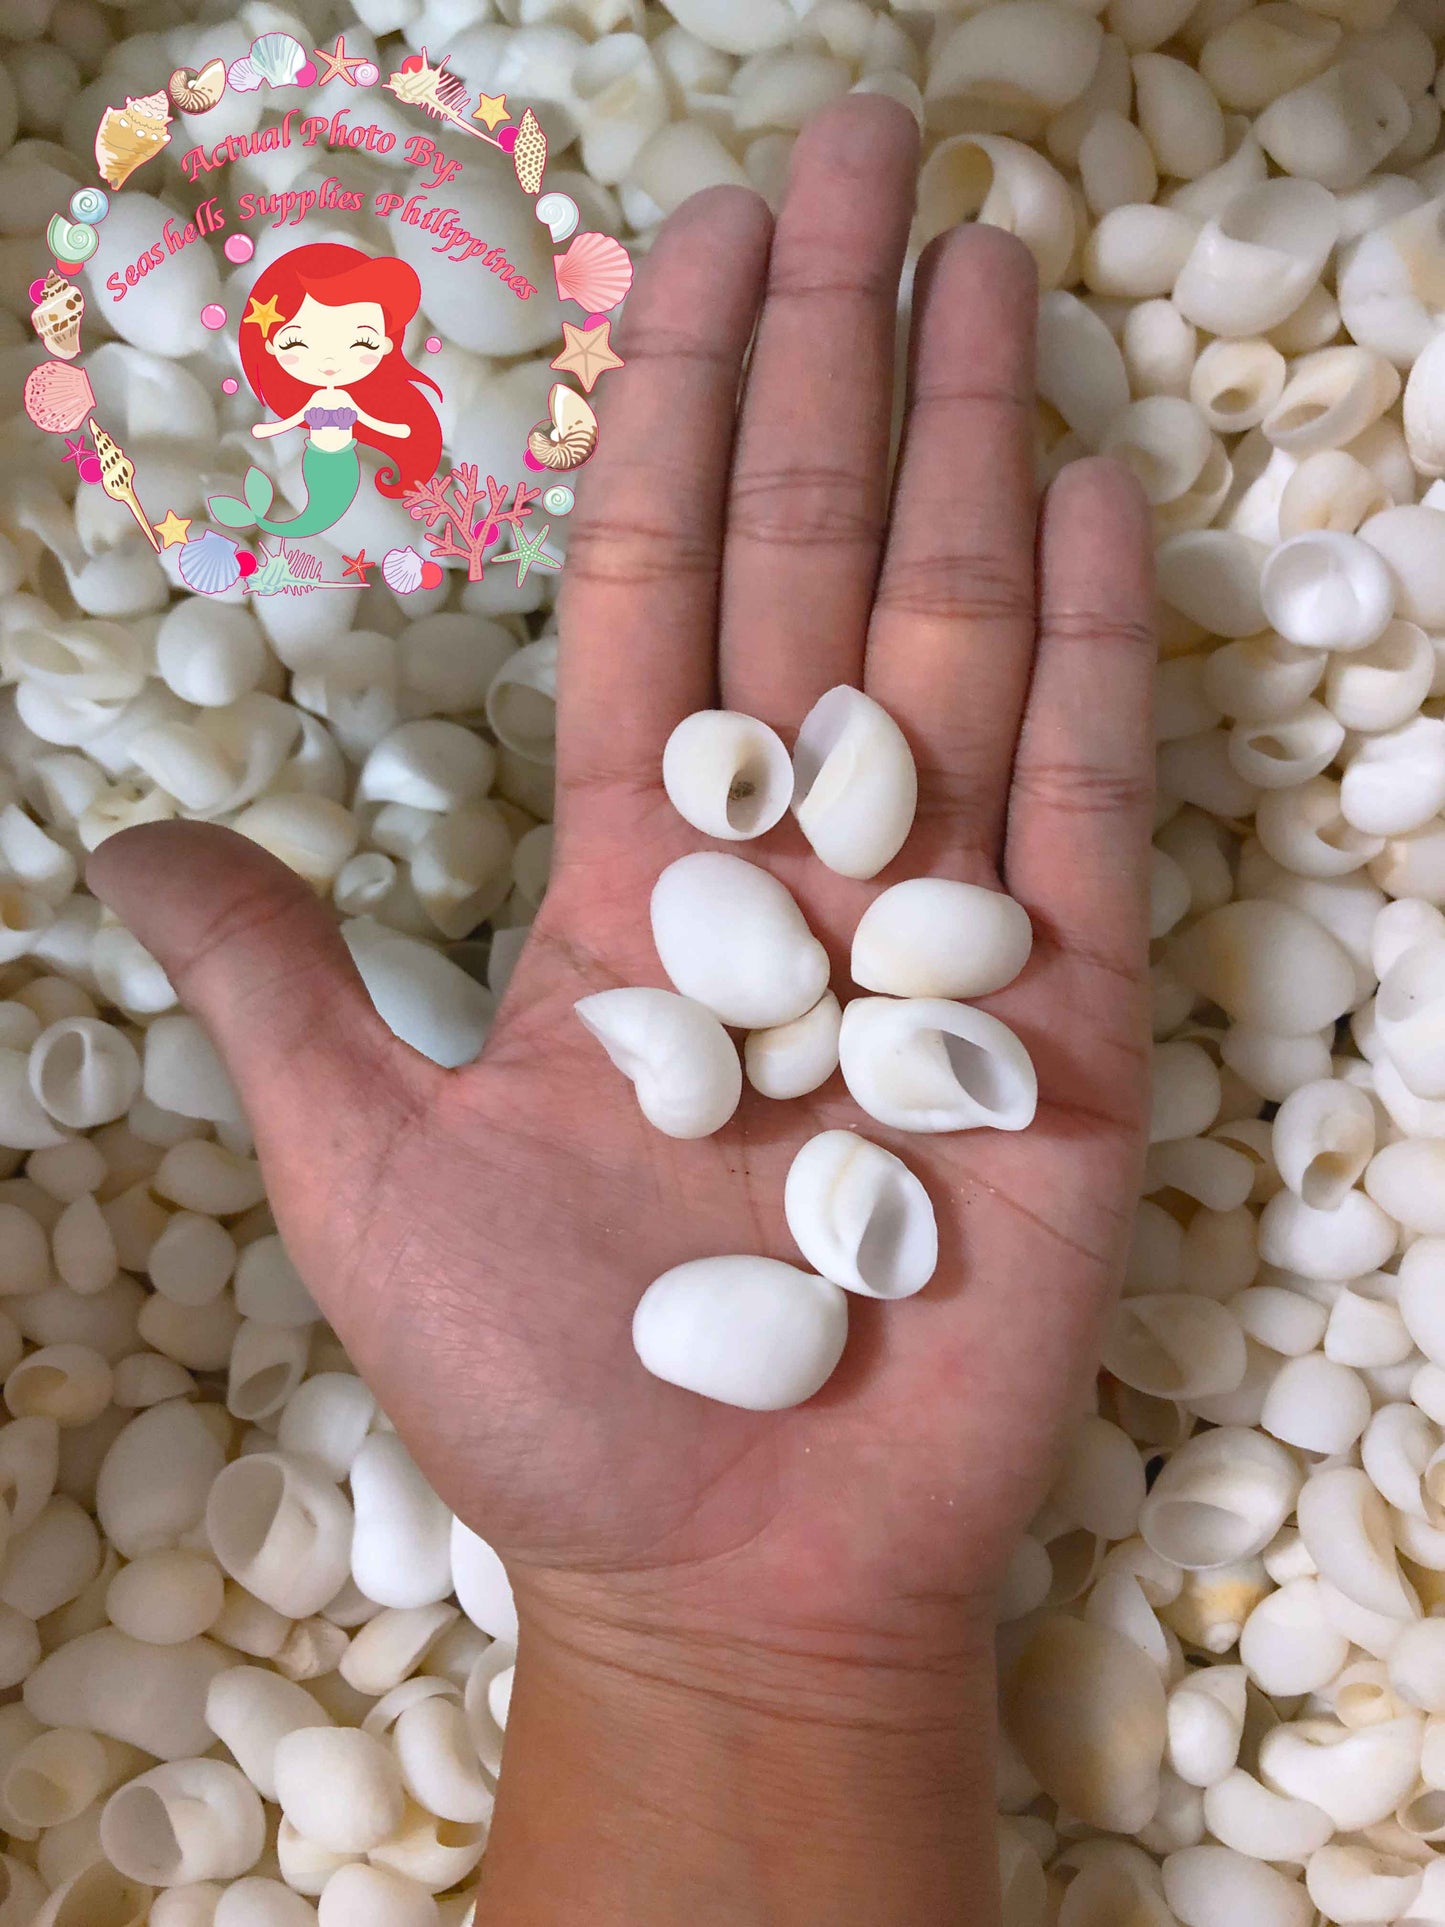 1 Kilo | Moonshell | New Zealand Moon | White | Seashells | Sea shells